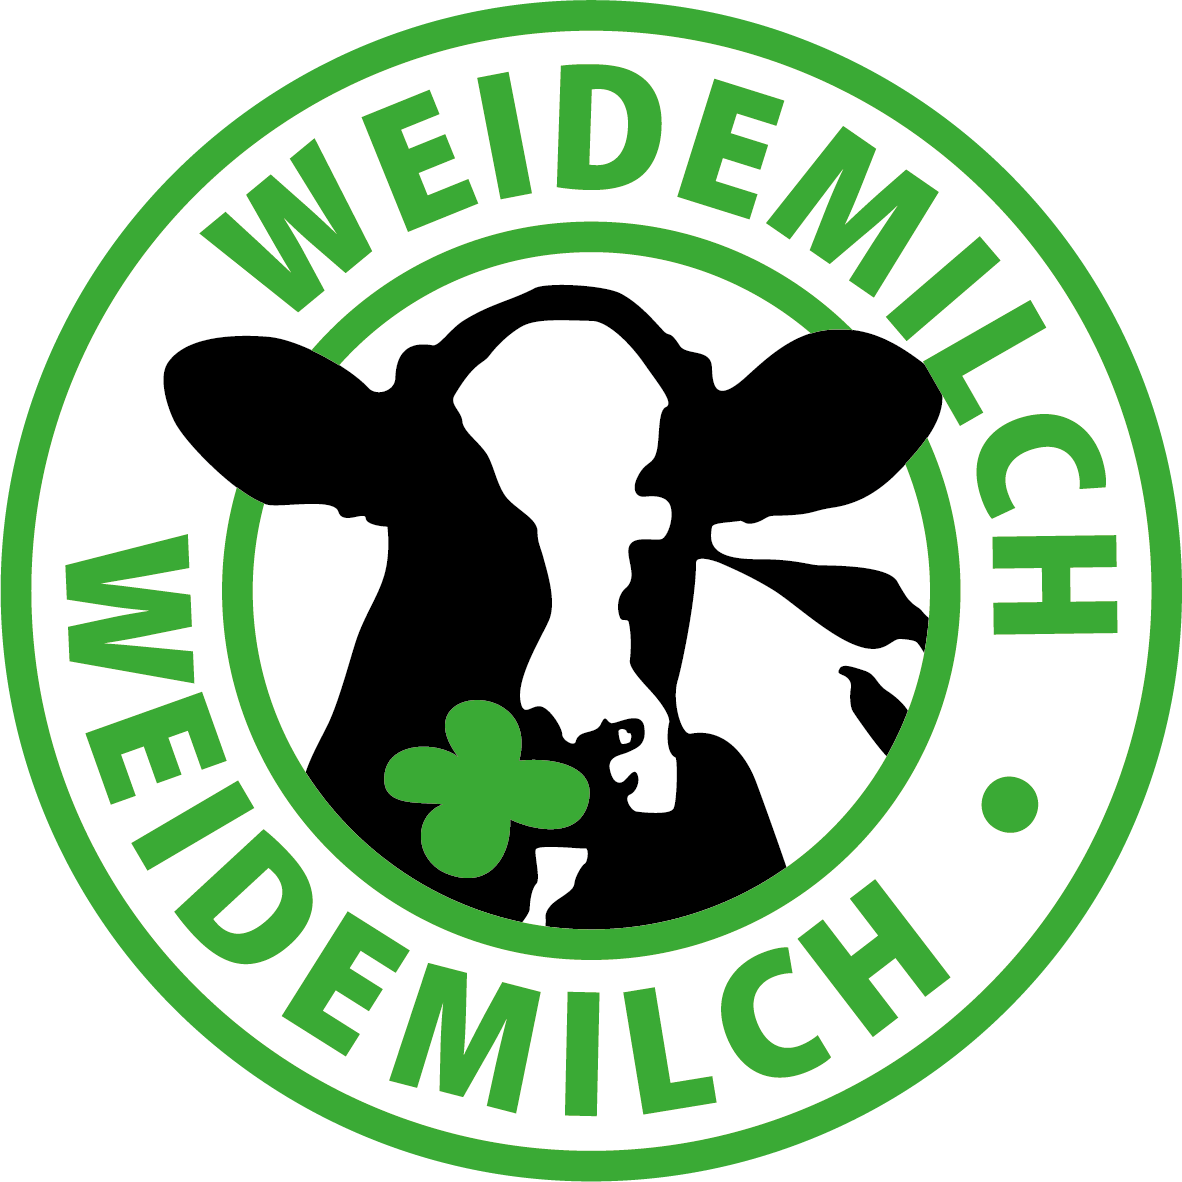 DE Weidemilch